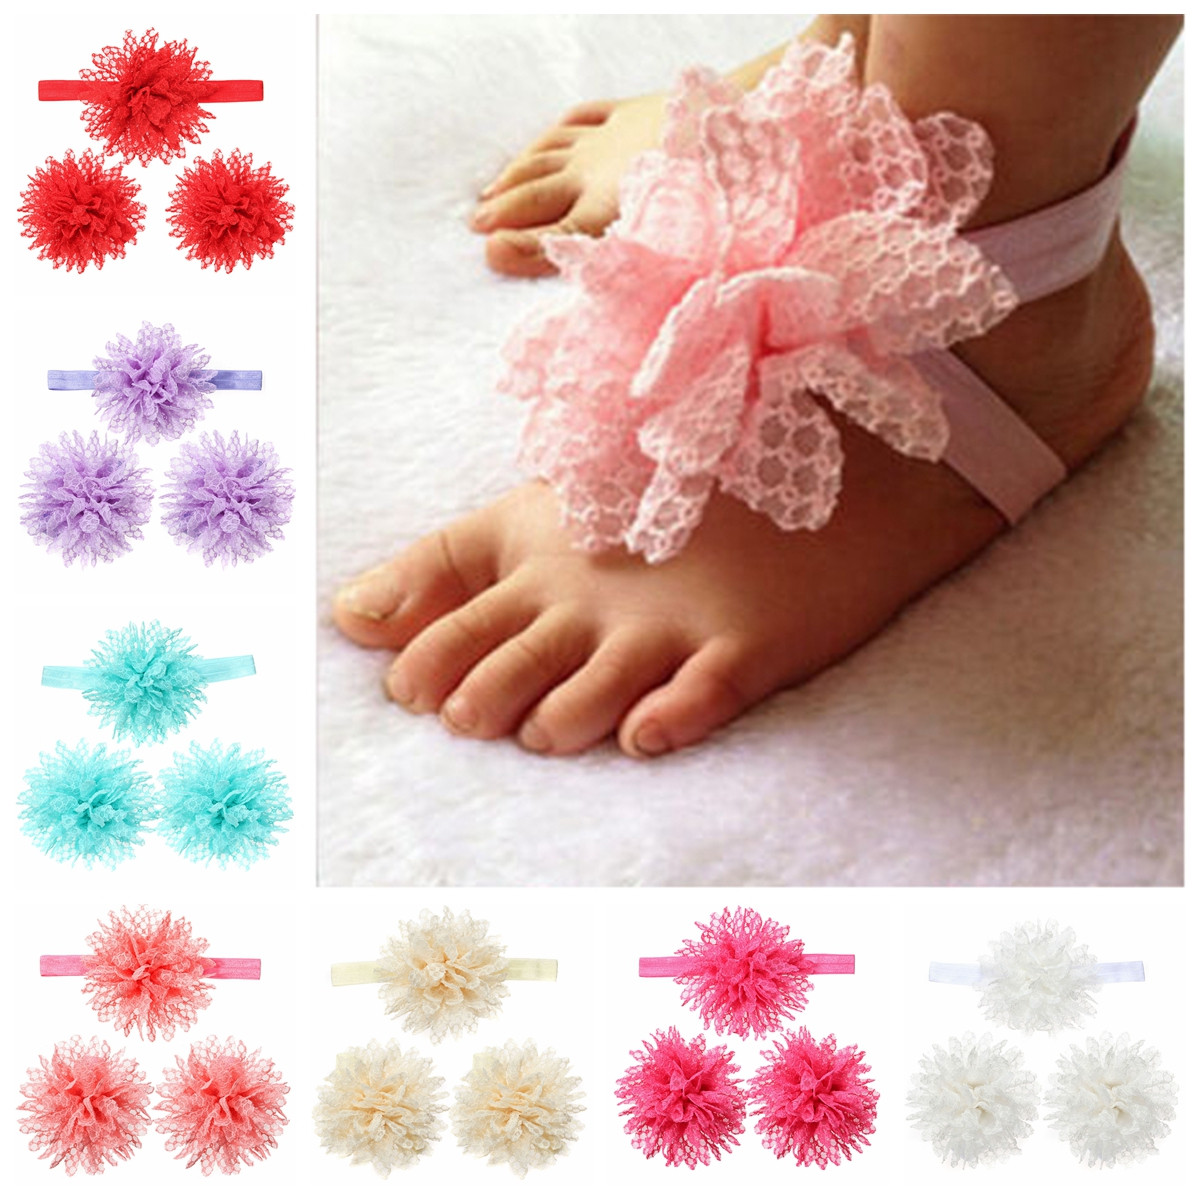 3pcs-a-Set-Lace-Flower-Hair-Band-Soft-Elastic-Wear-Accessories-Barefoot-Art-Feet-Baby-Girls-Headbran-1037367